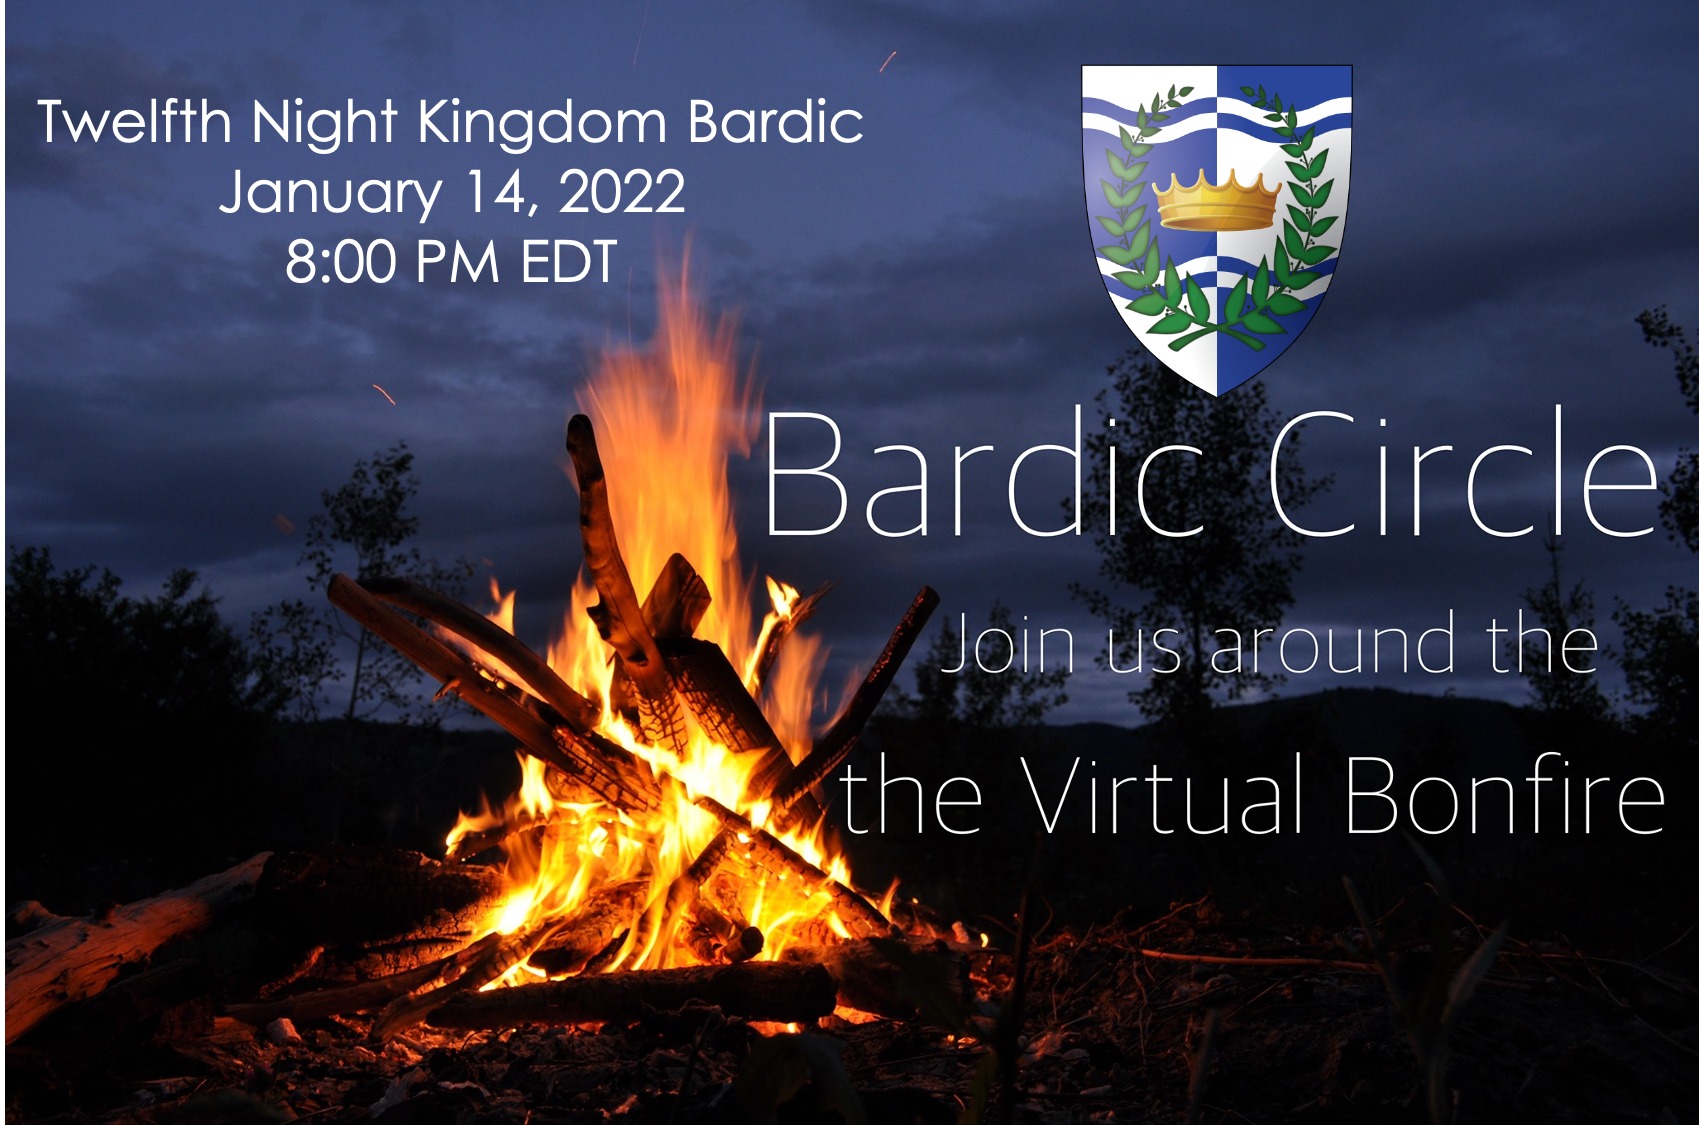 Bardic Circle Friday night at 8 PM Eastern